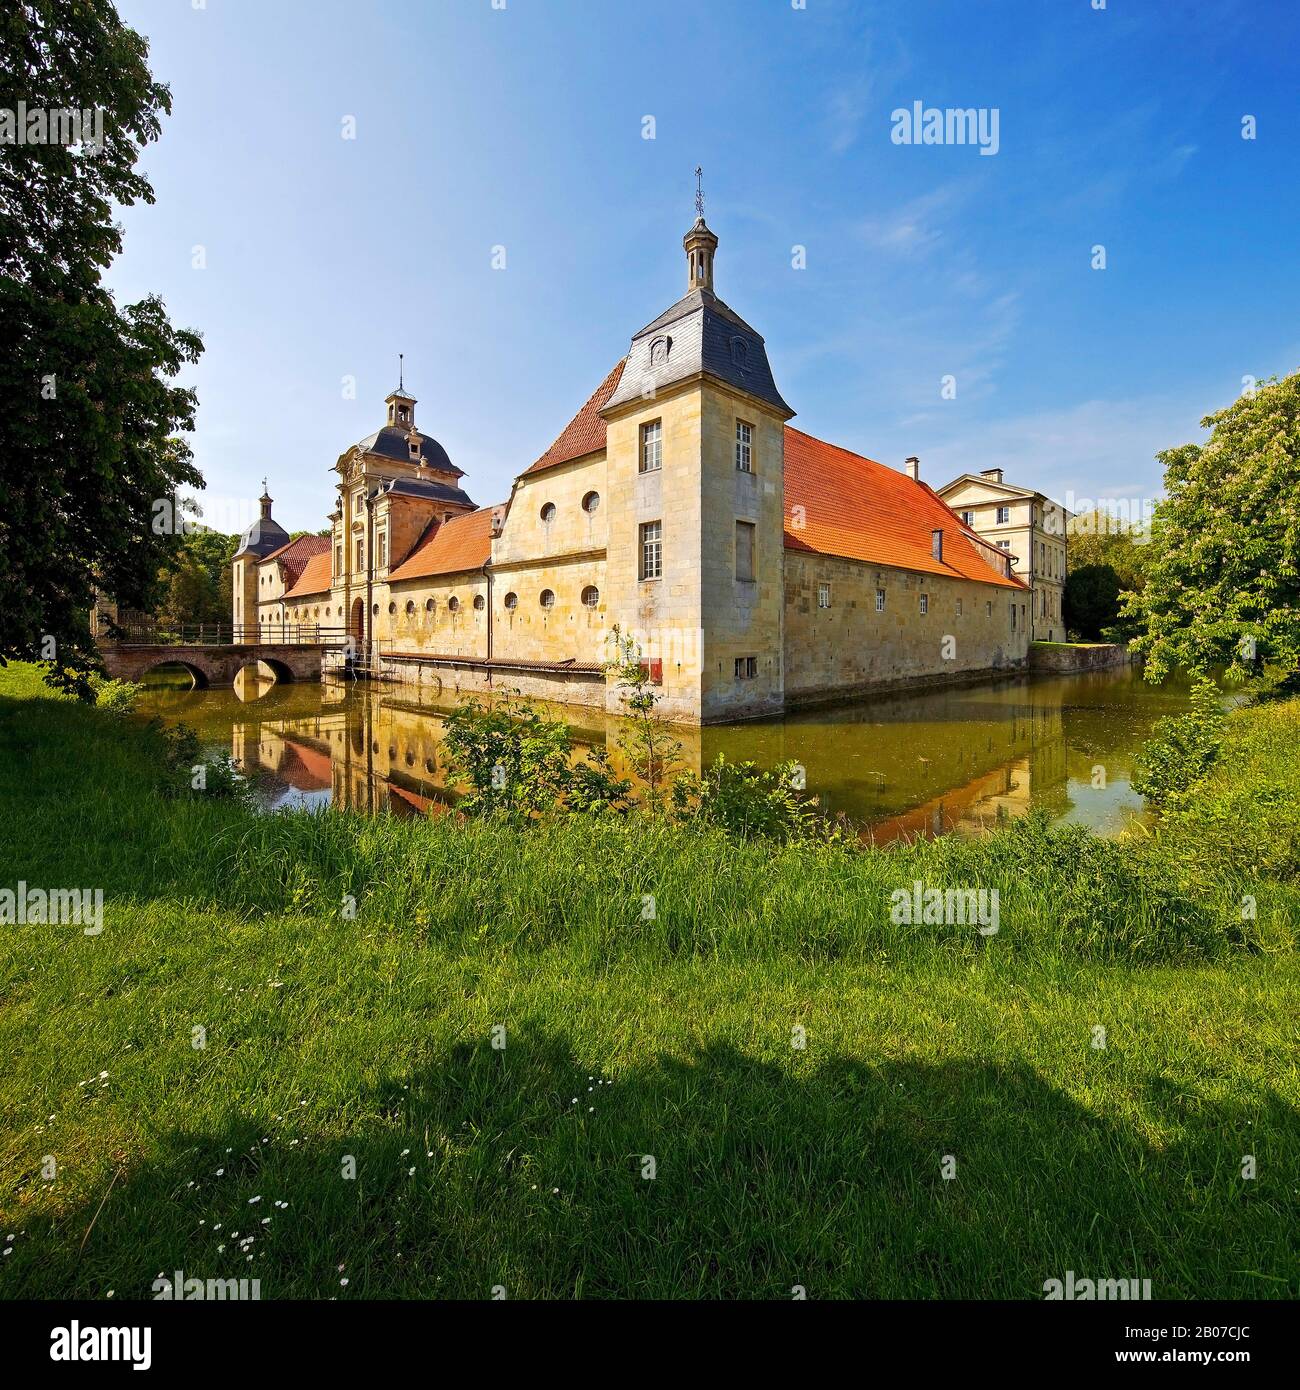 Stapel House, l'un des plus grands châteaux de Westphalie, Allemagne, Rhénanie-du-Nord-Westphalie, Muensterland, Havixbeck Banque D'Images